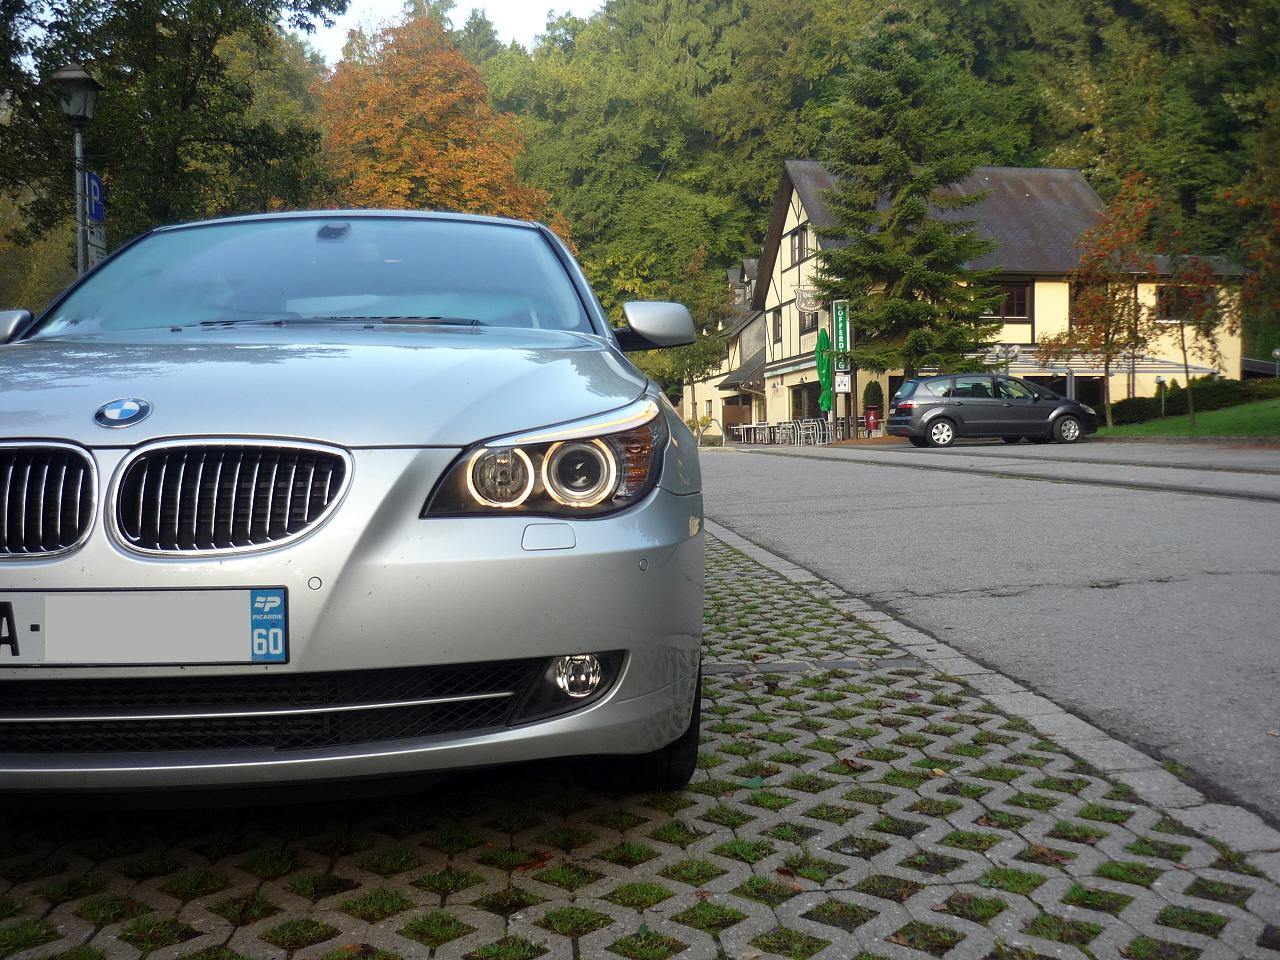 Guitigefilmpjes: Picture update: BMW 5-series E60 LCI